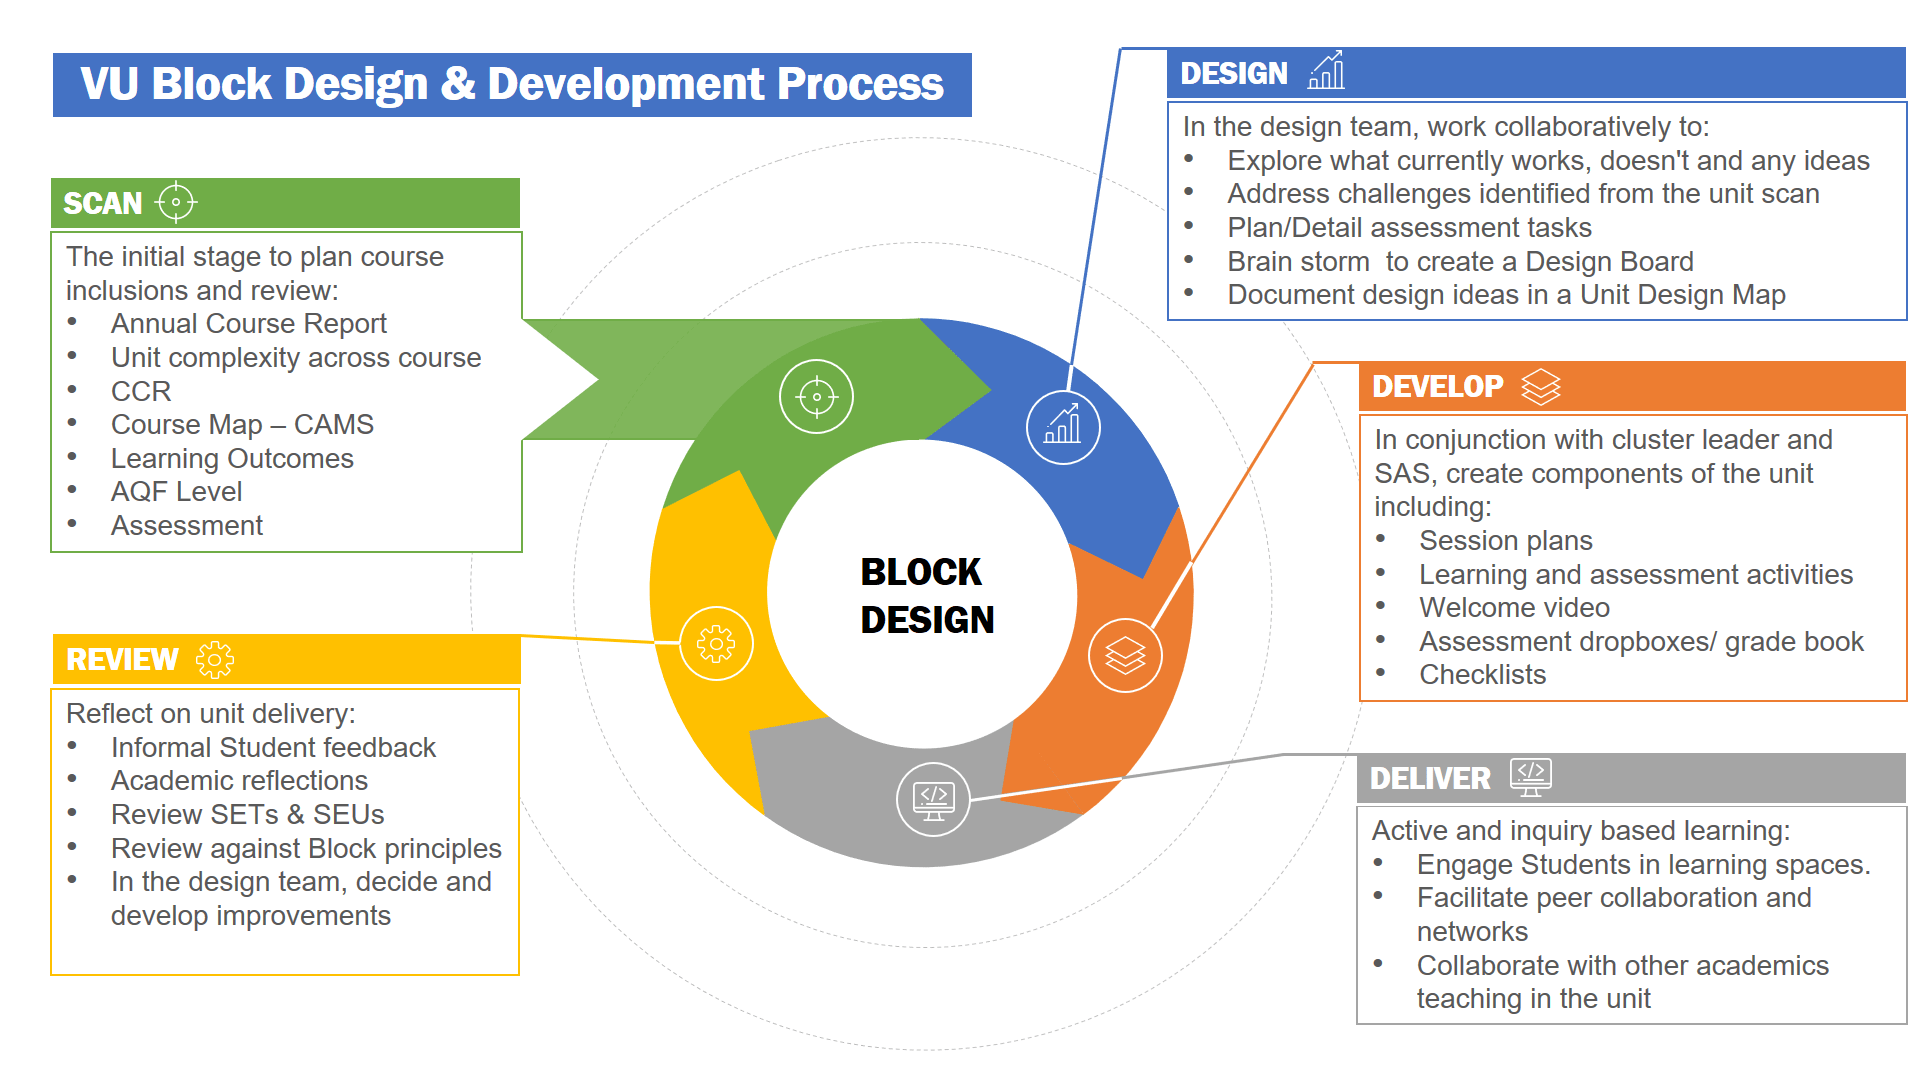 VU block design and development process